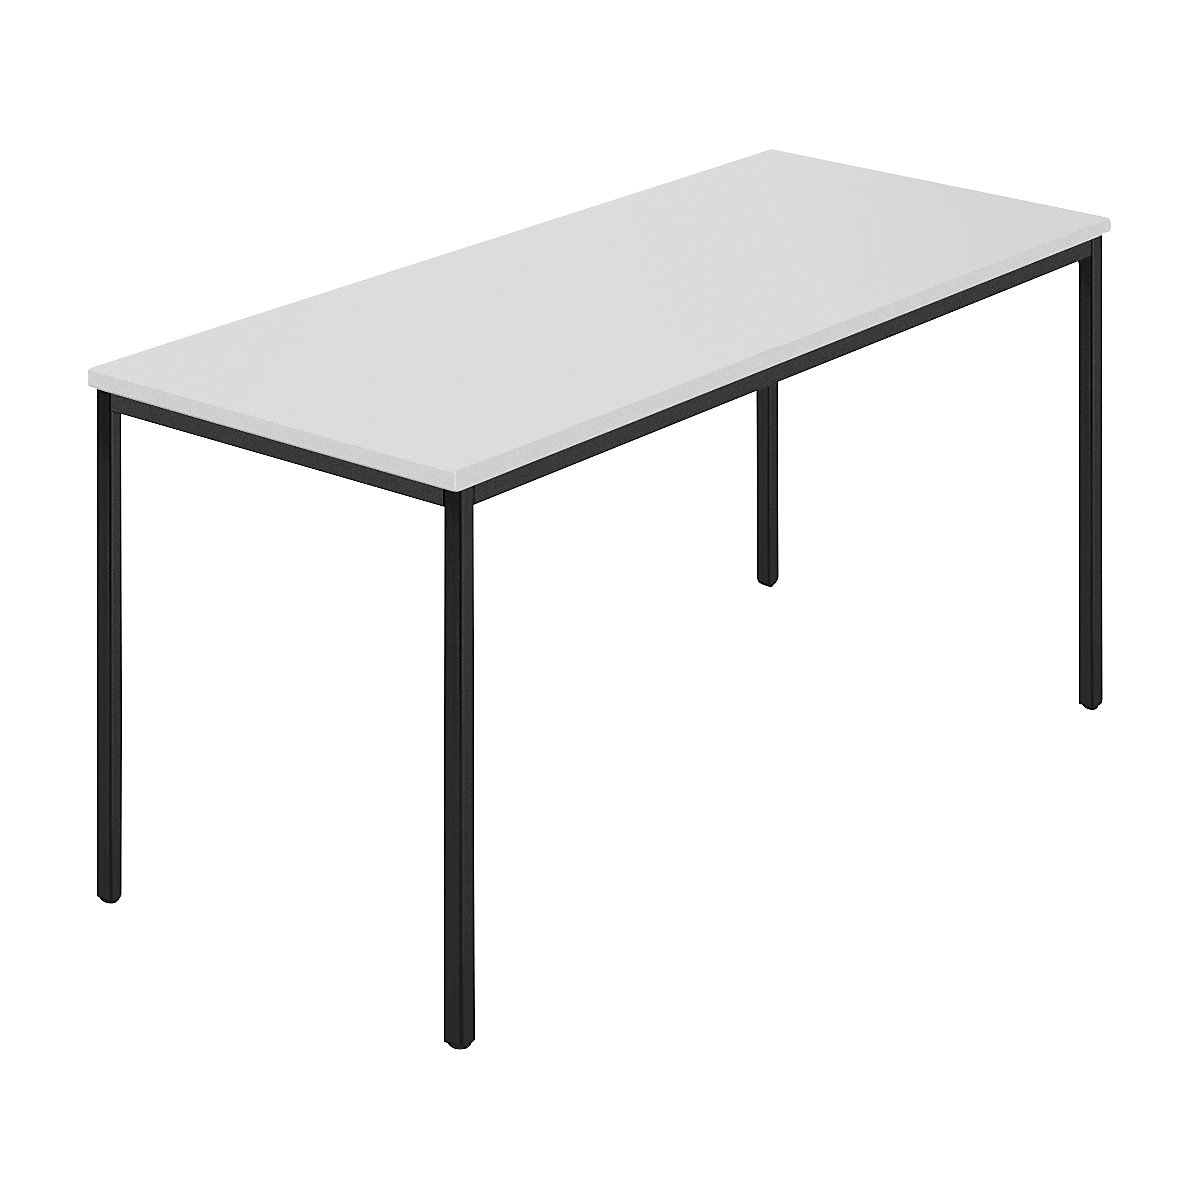 Table rectangulaire, tube carré plastifié, l x p 1400 x 700 mm, gris / anthracite-8